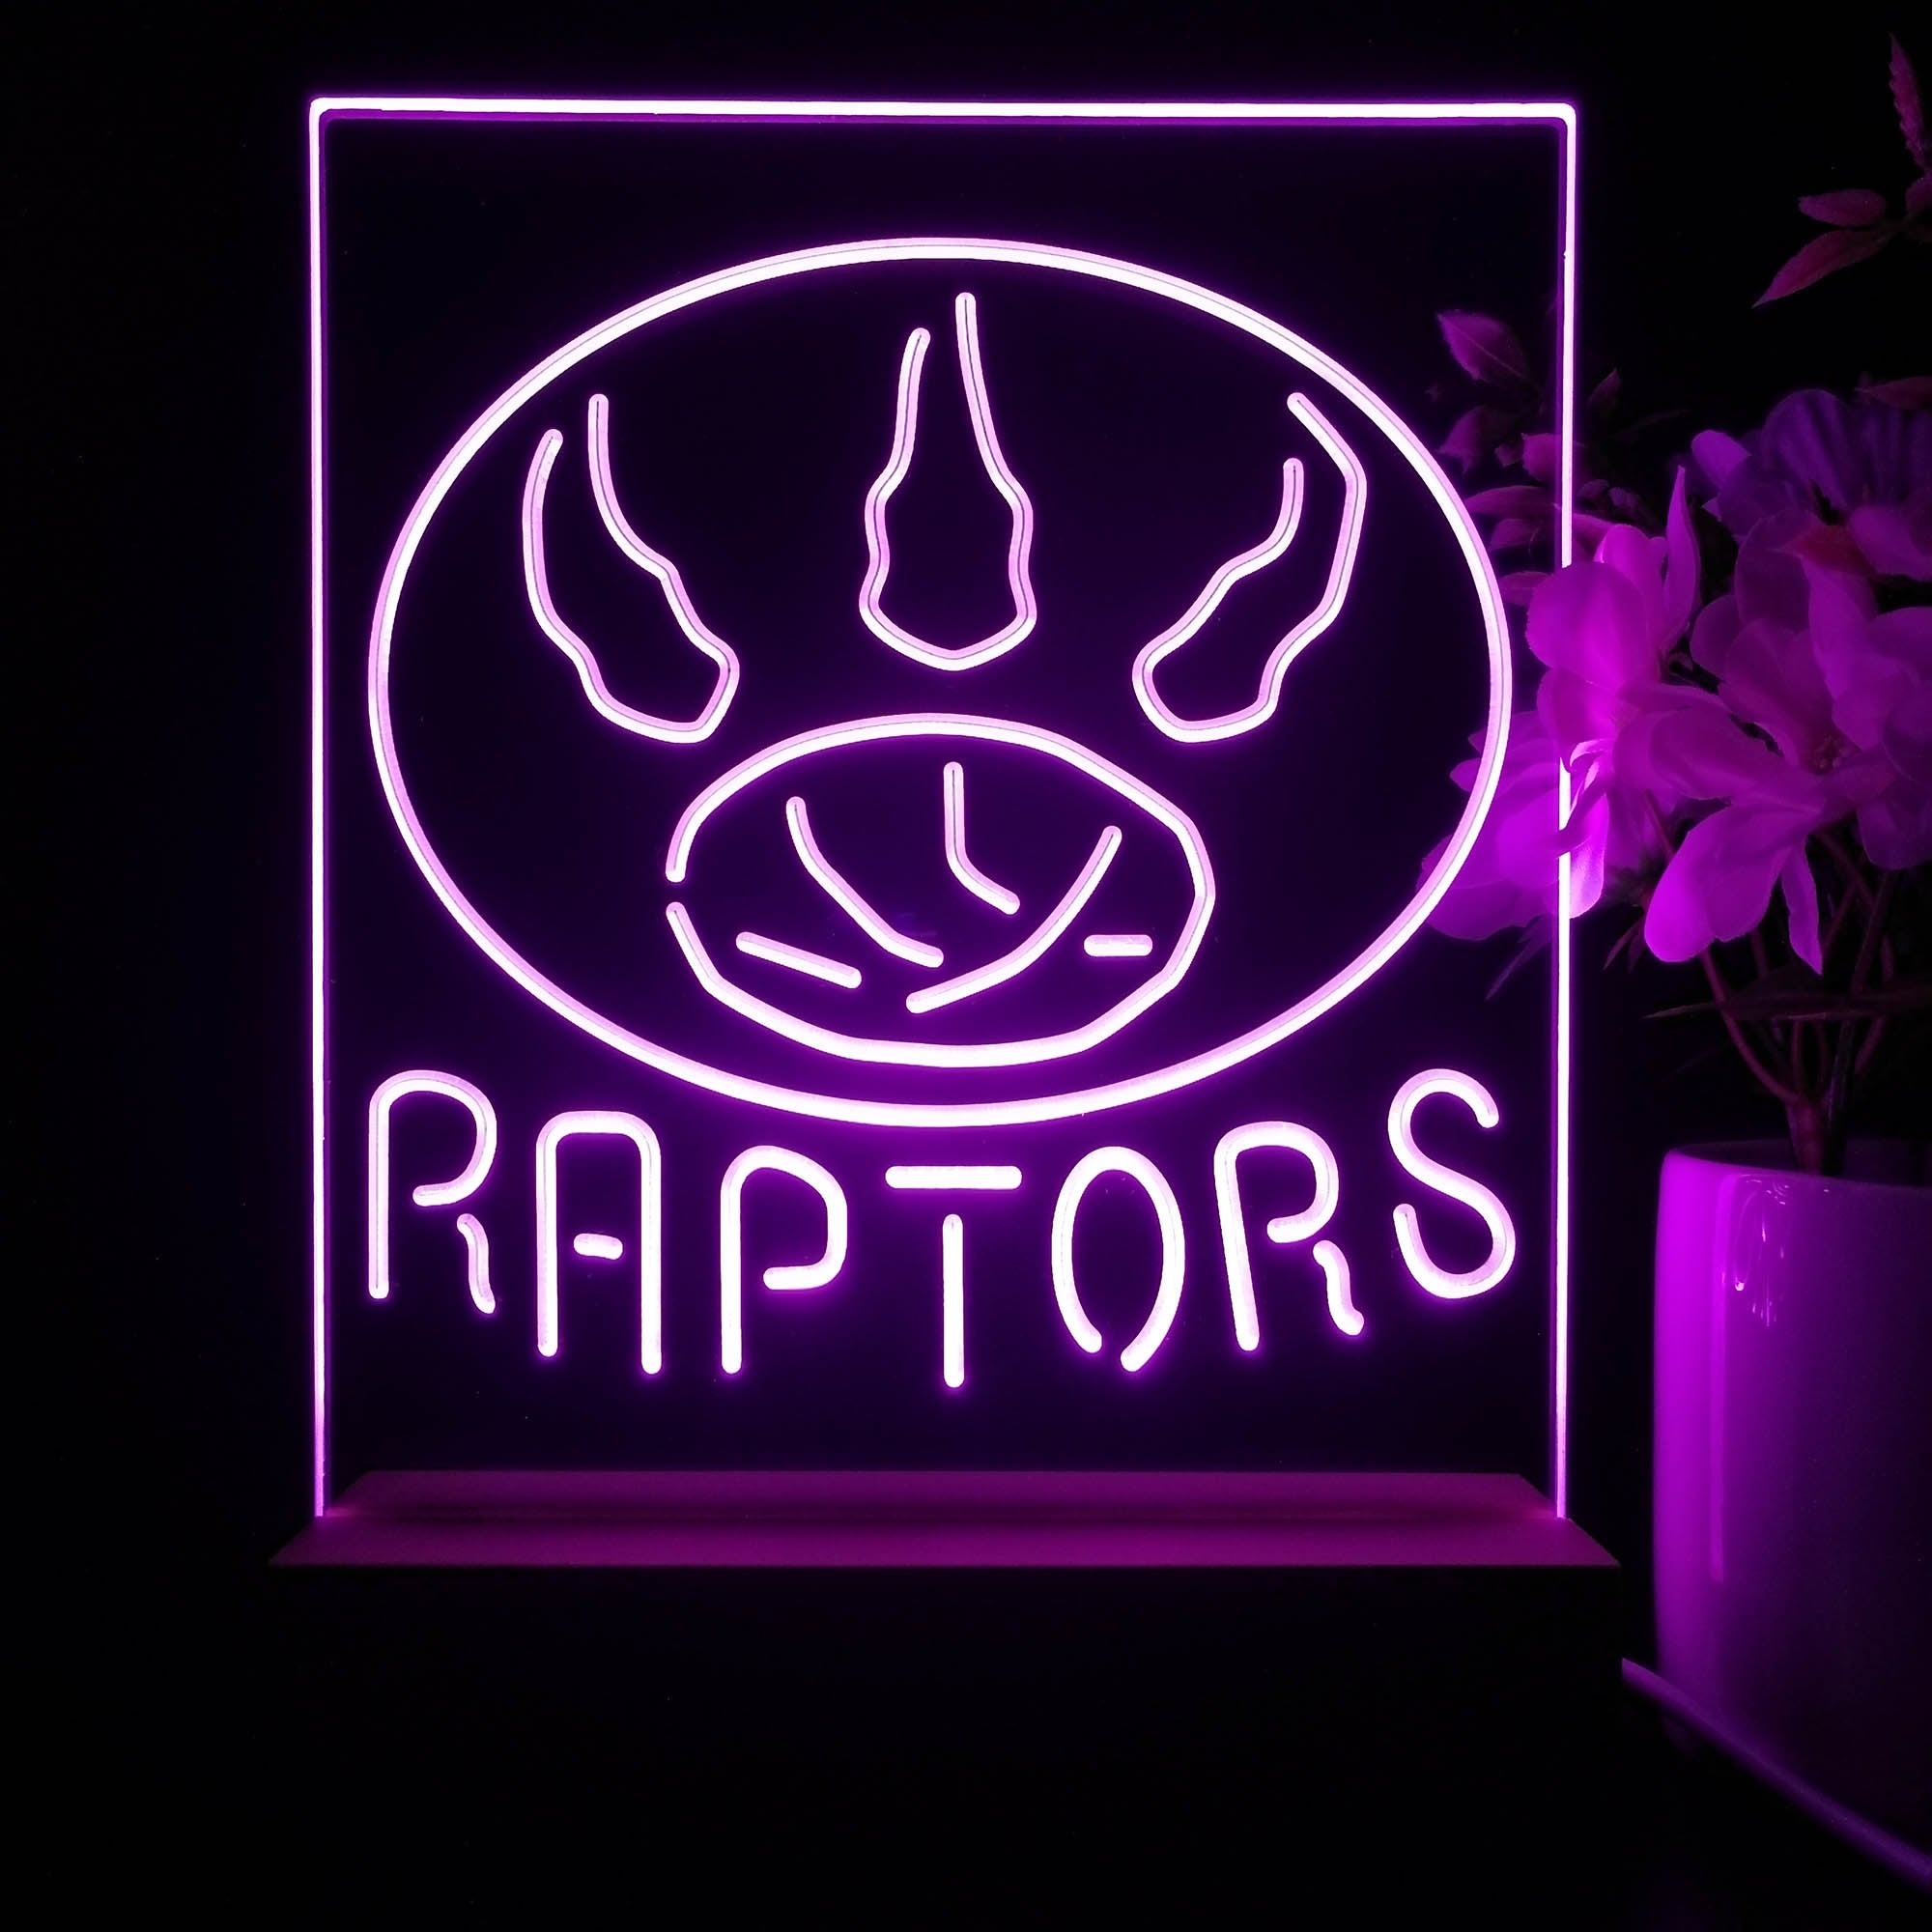 Toronto Raptors Neon Sign Table Top Lamp